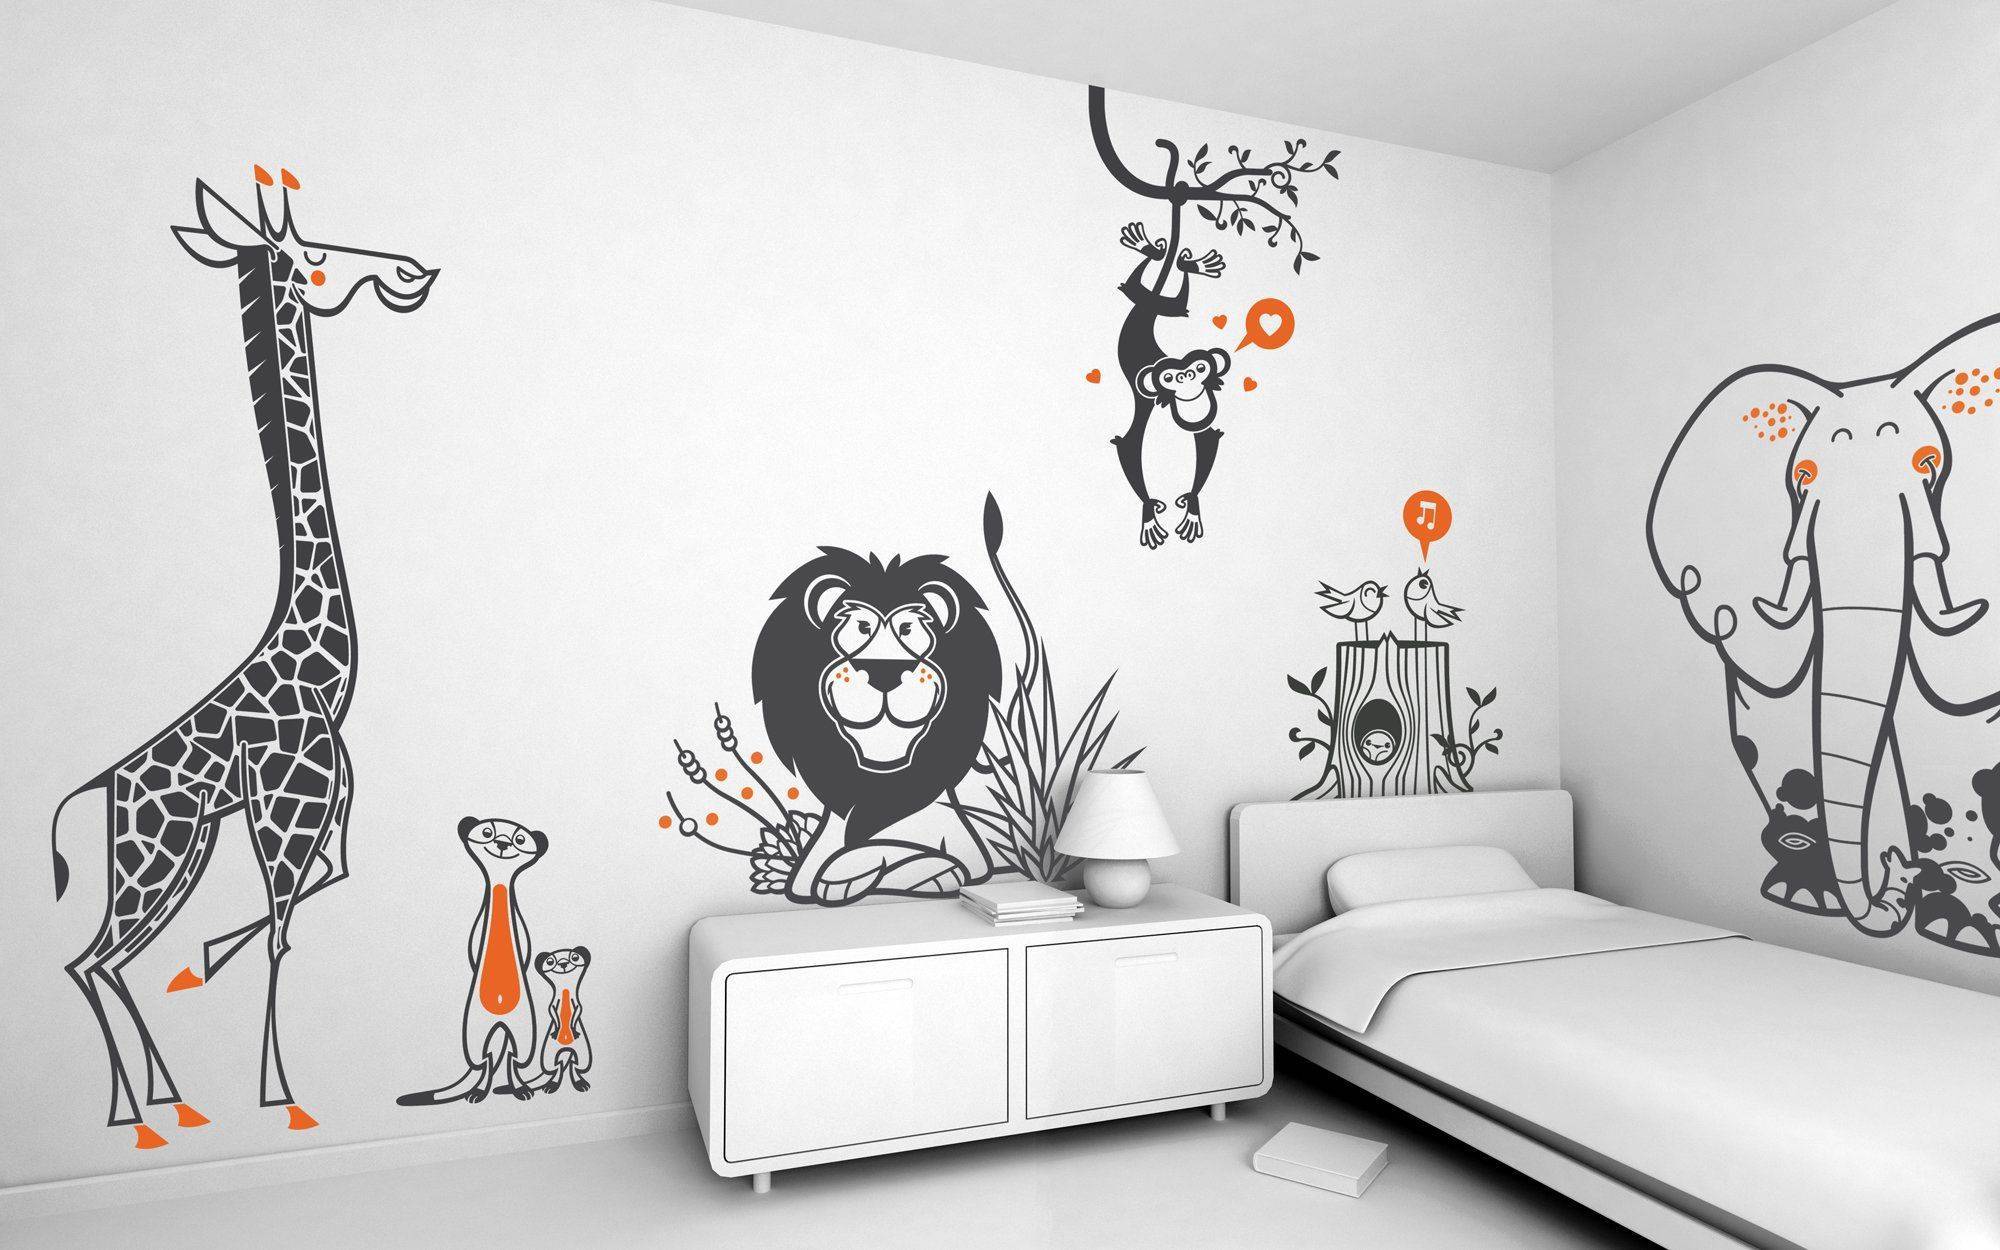 Что можно нарисовать на стене: фото лучших дизайнерских идей рисования на стенах в квартире